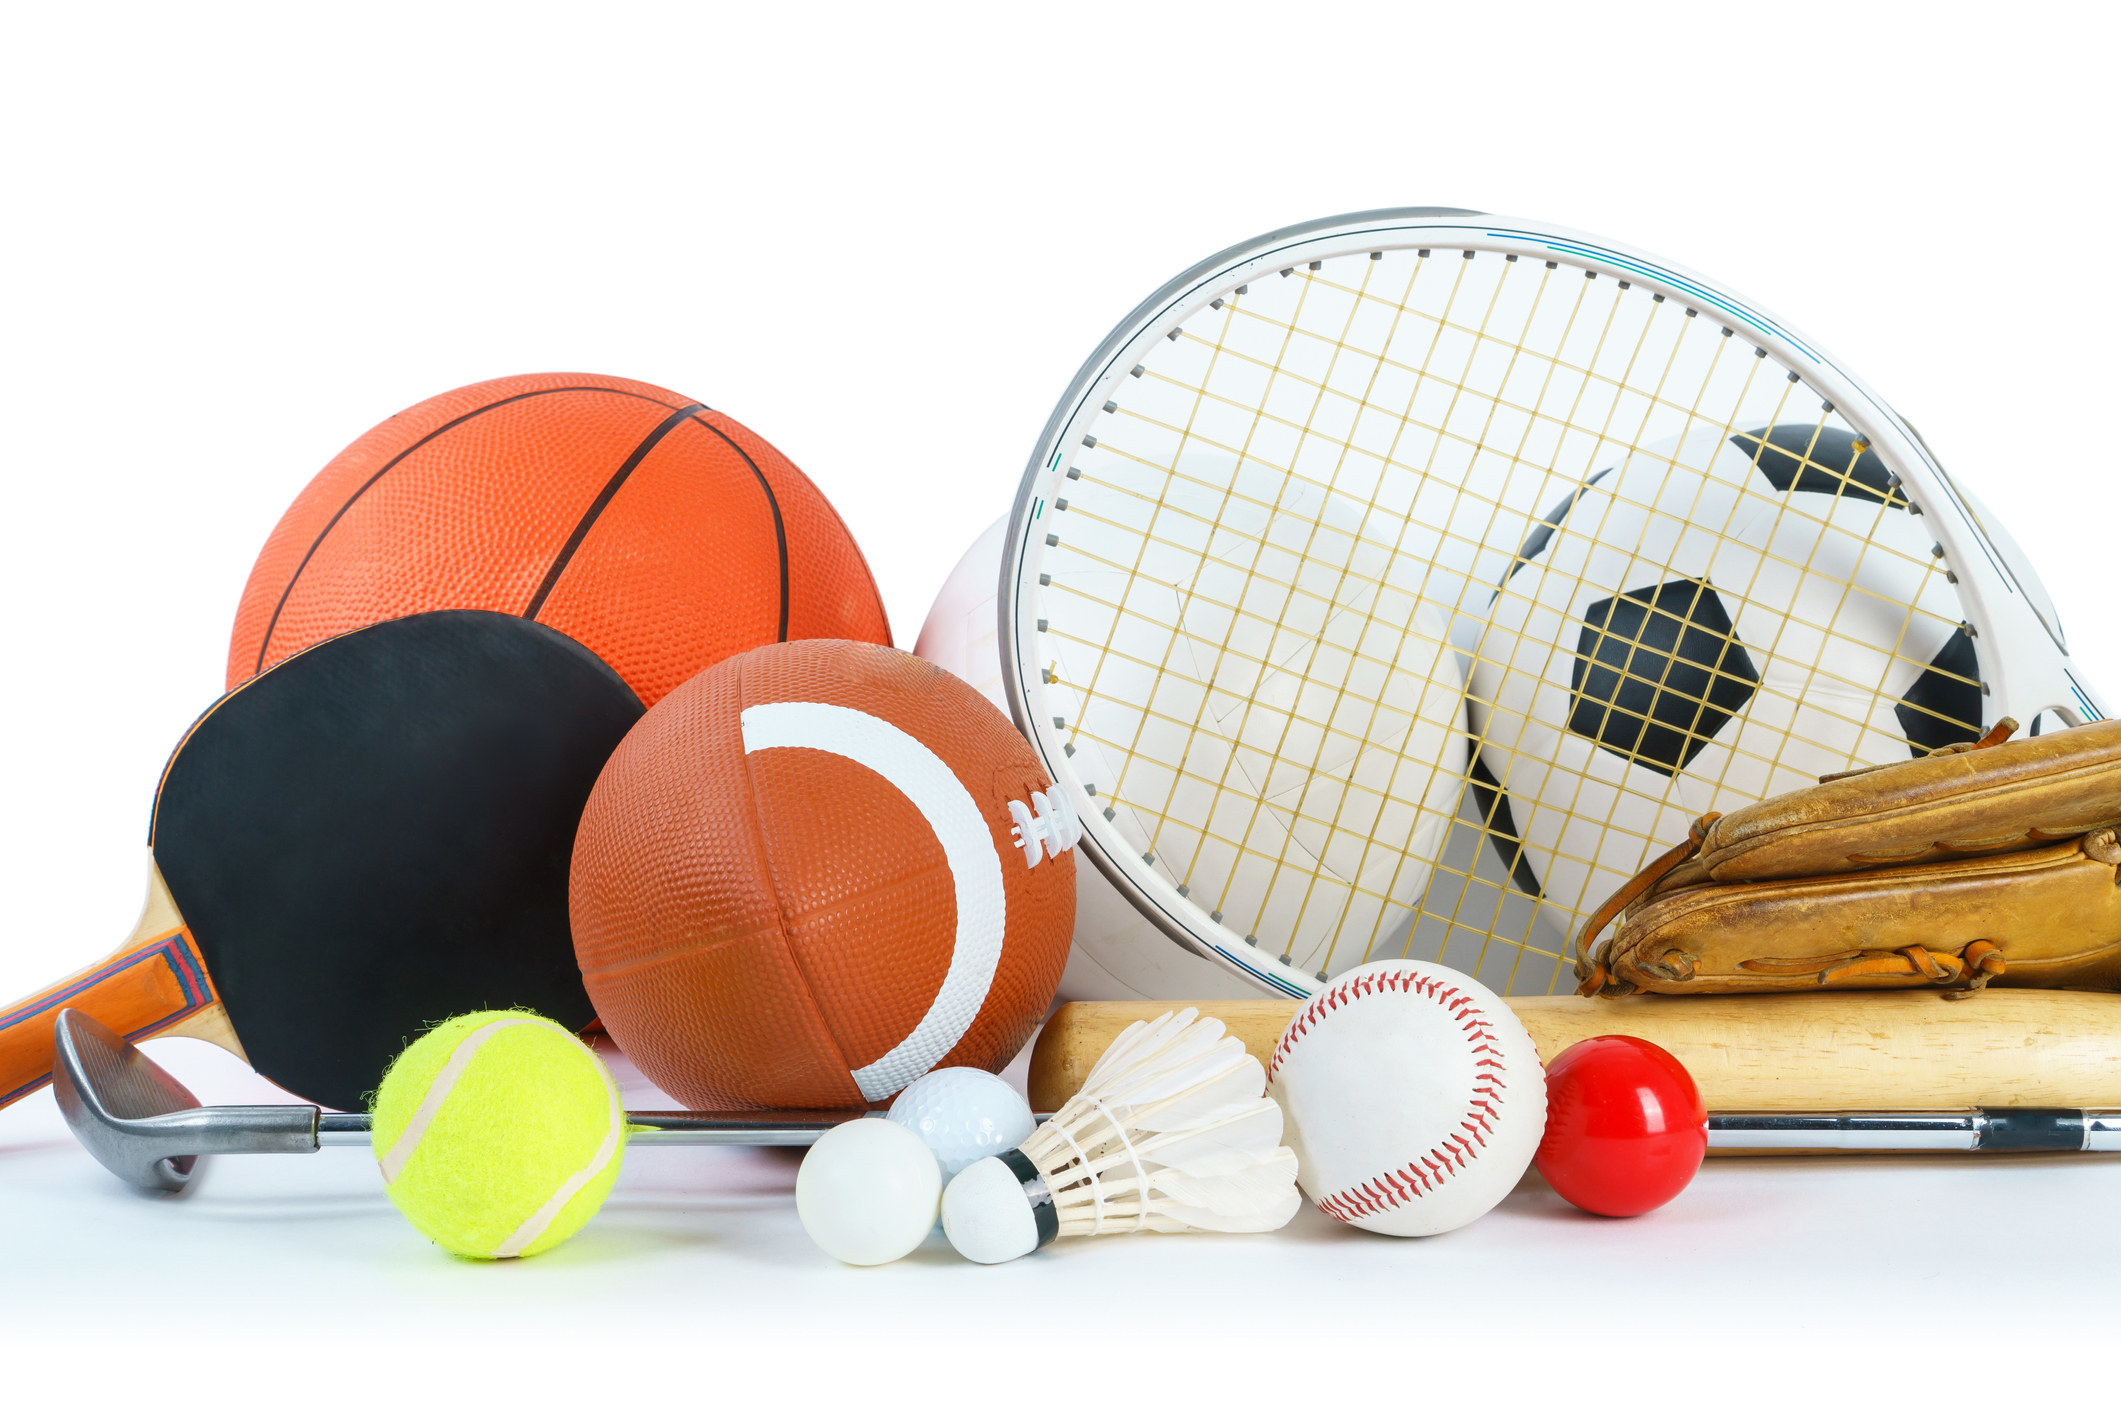 An assortment of sports balls